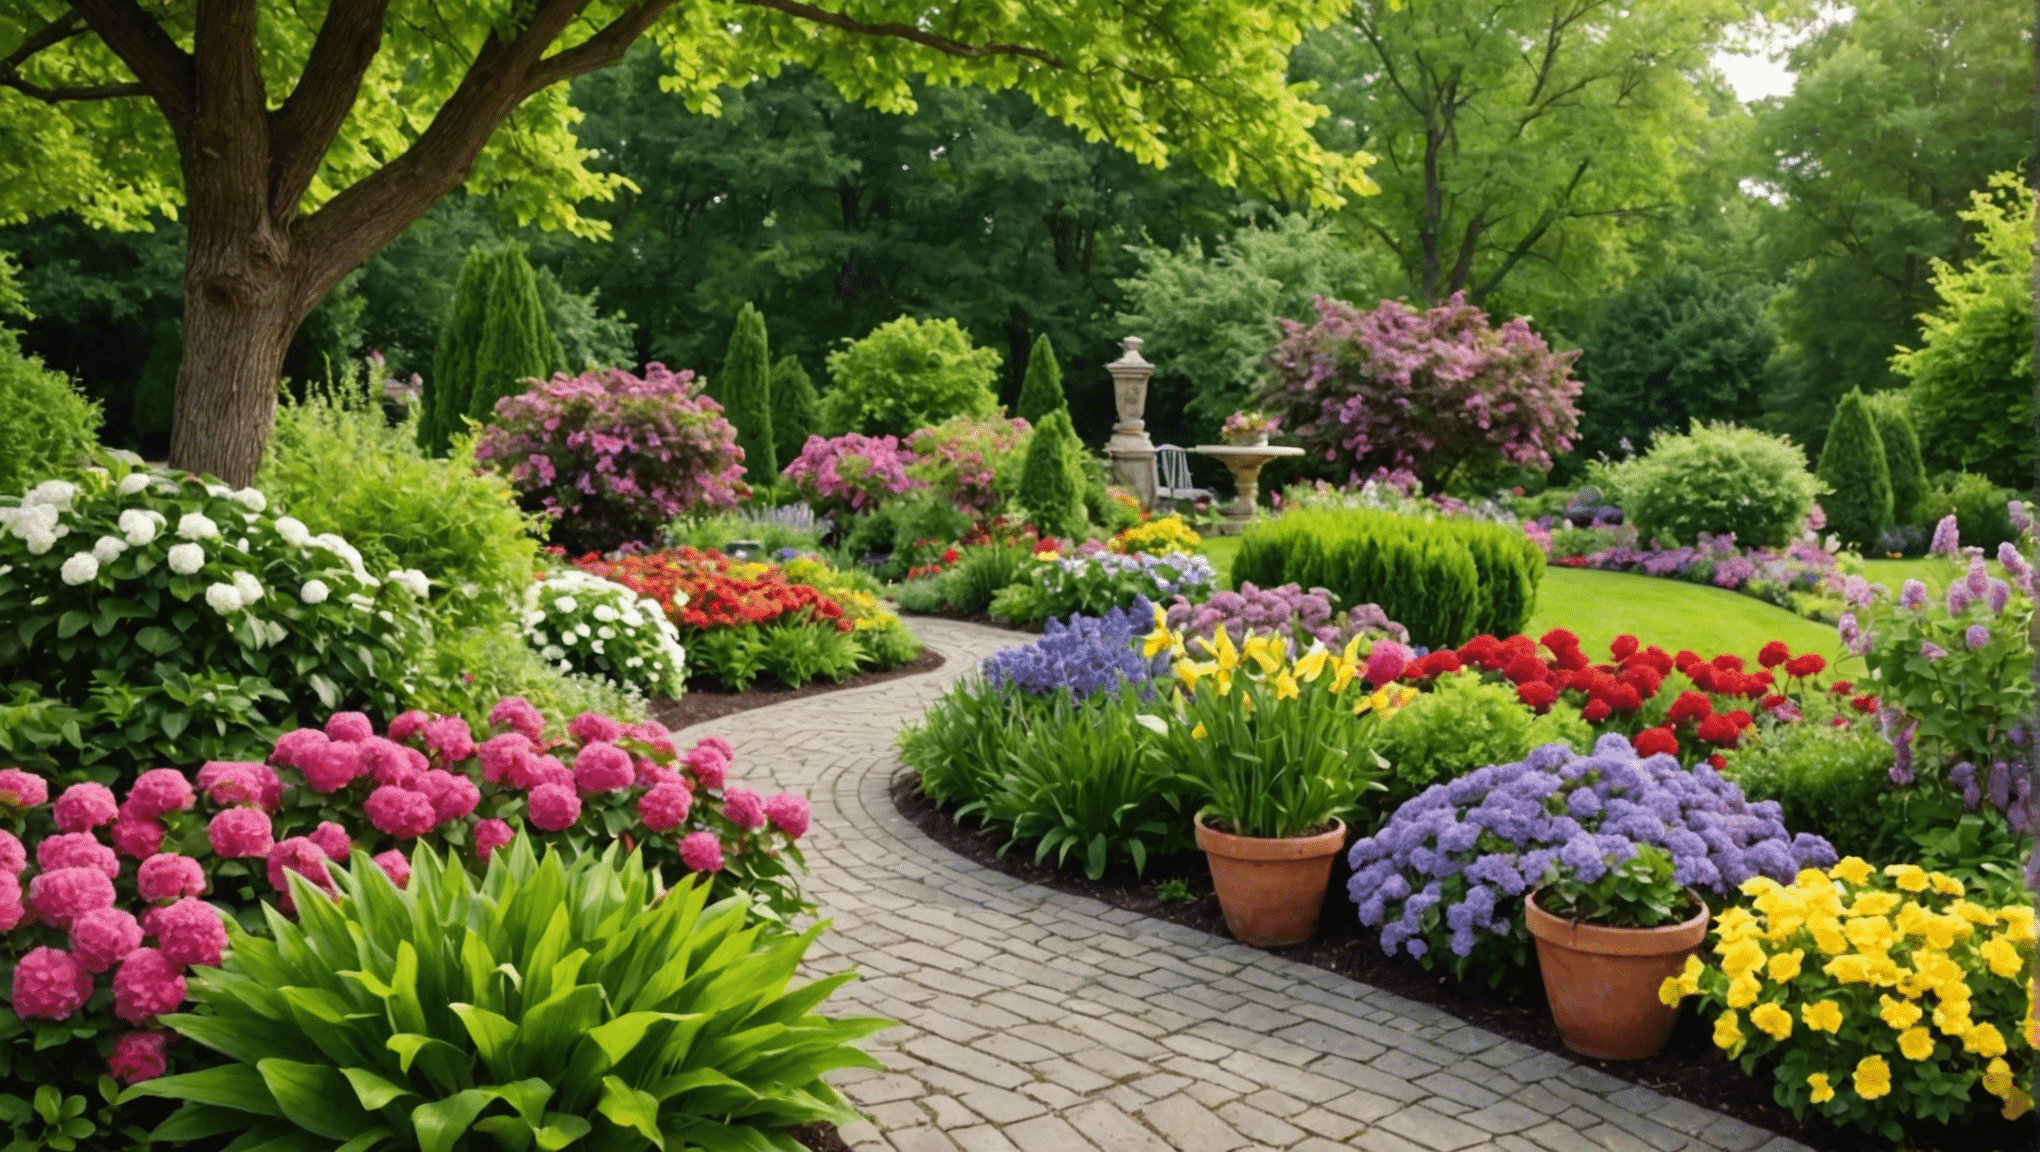 upptäck de bästa sommarträdgårdsidéerna för att lyfta ditt utomhusutrymme. från livfulla blomsterarrangemang till innovativa hållbara metoder, hitta inspiration till att odla en blomstrande trädgård den här säsongen.